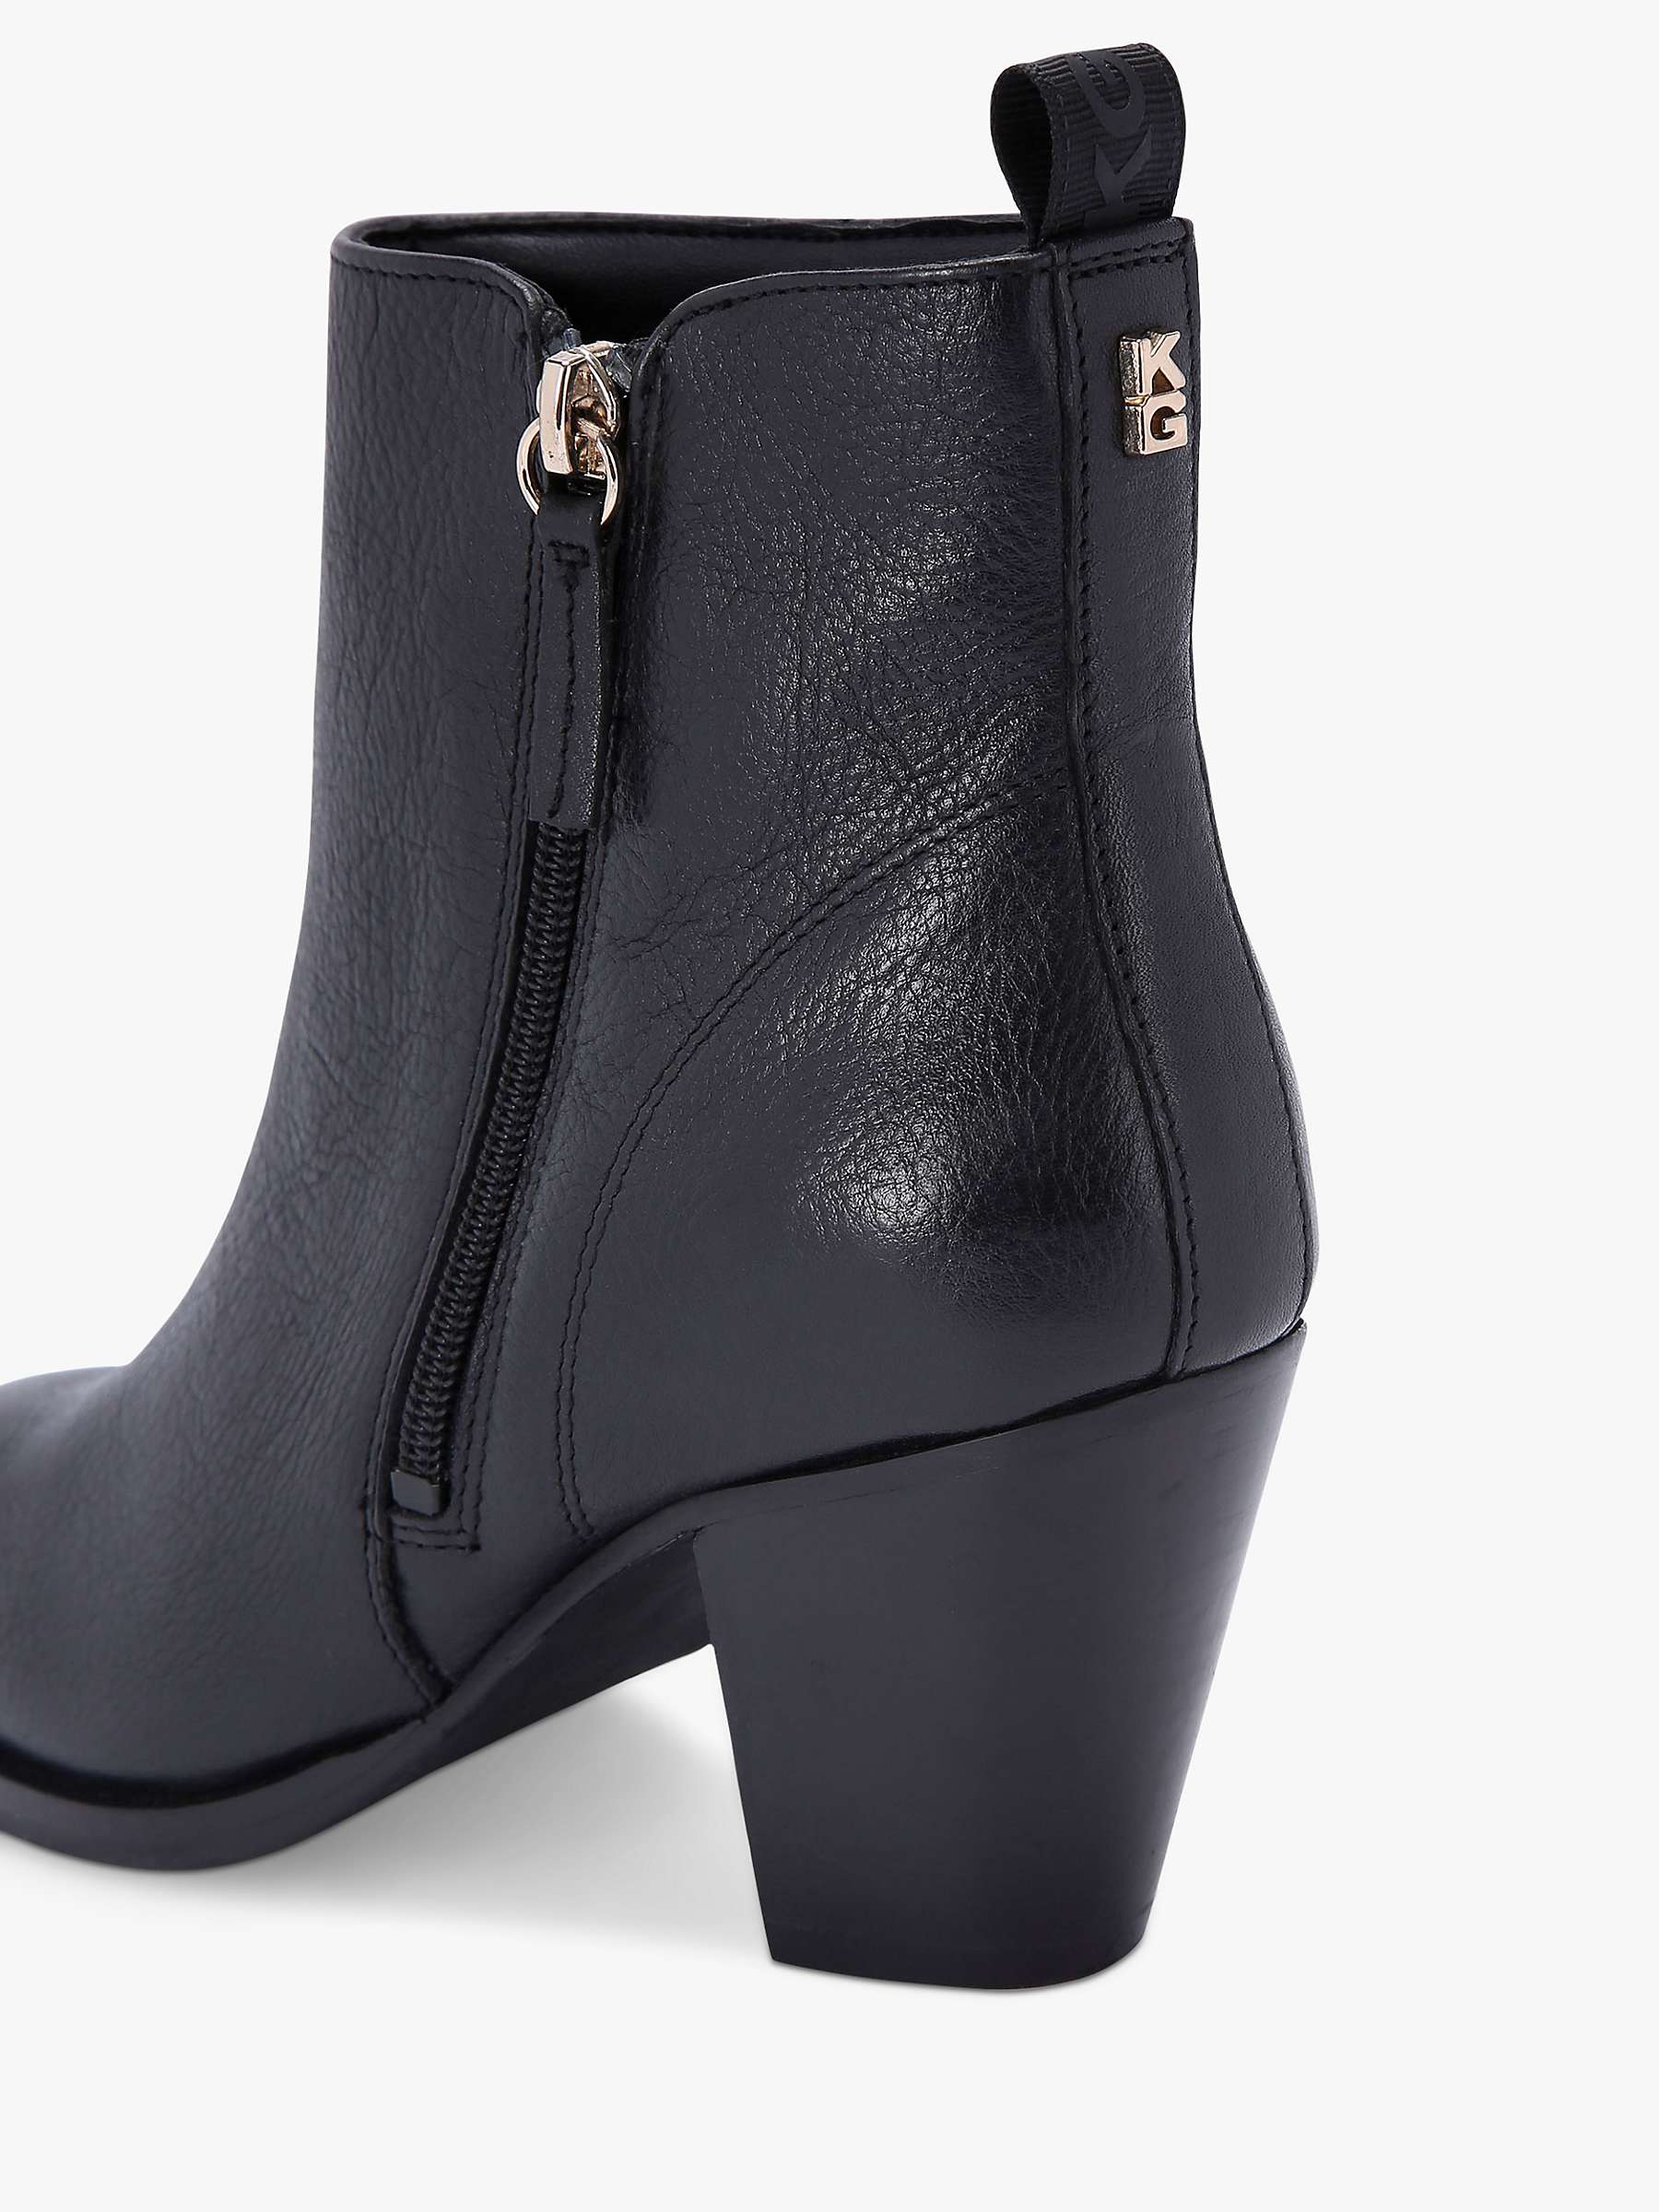 Buy KG Kurt Geiger Tame Leather Ankle Boots, Black Online at johnlewis.com